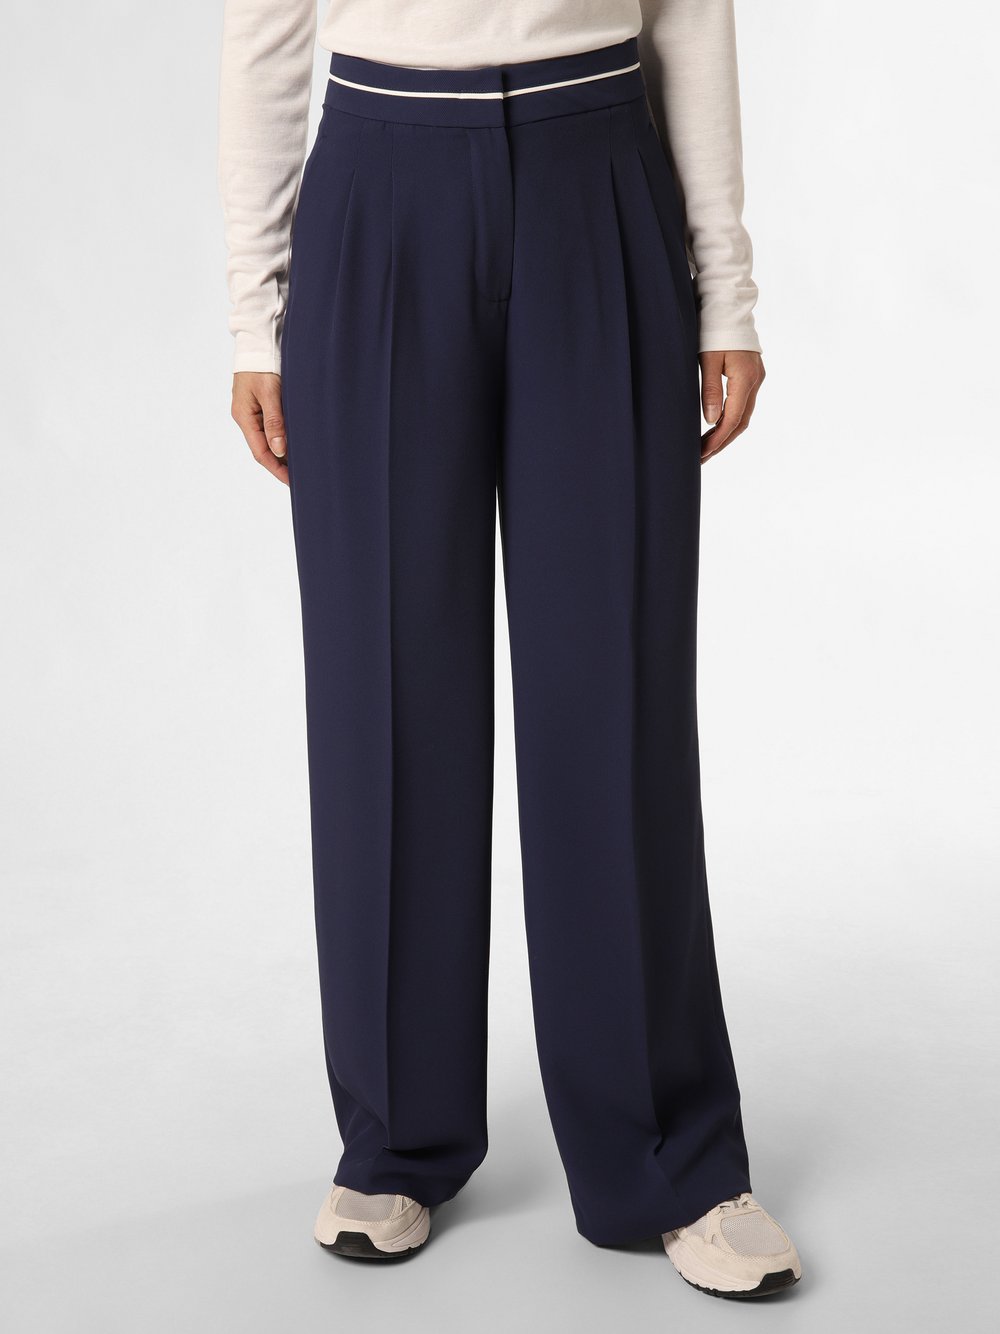 More & More Spodnie Kobiety niebieski jednolity, 38